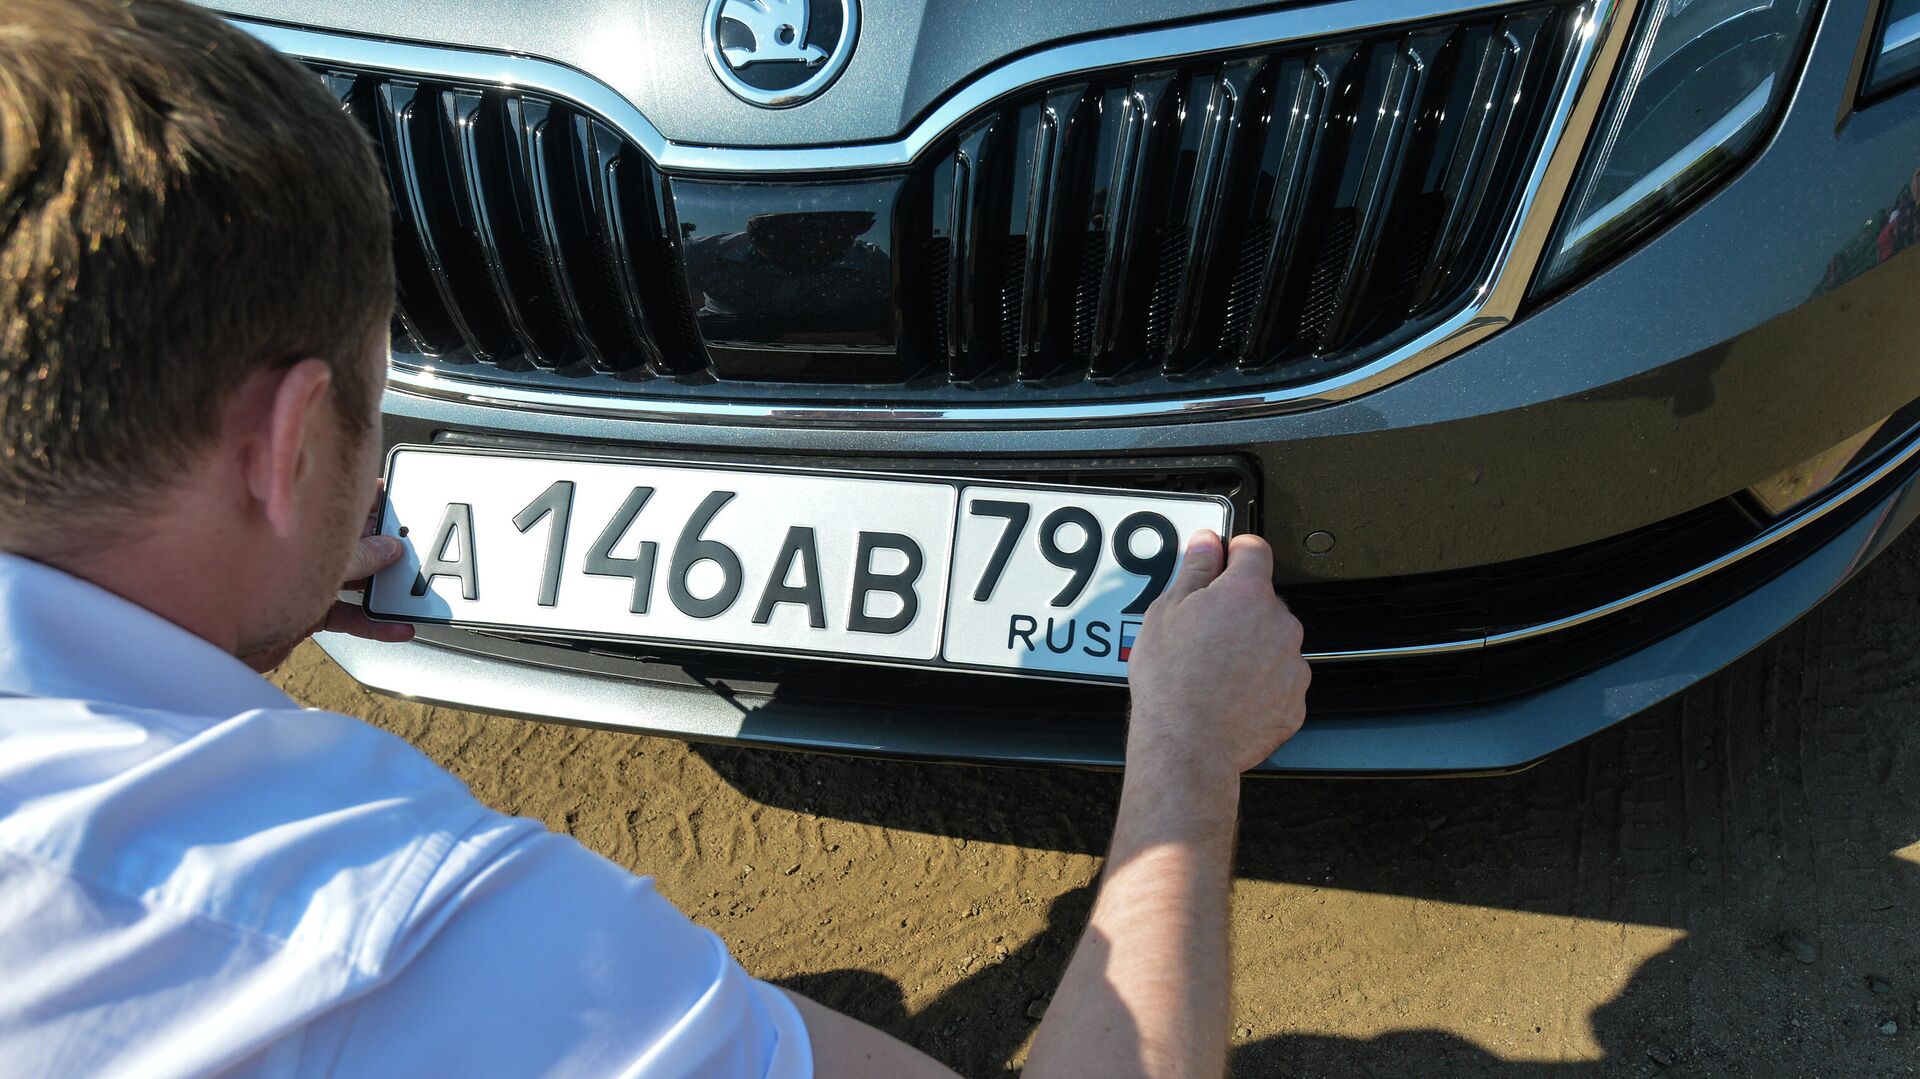 Автовладелец устанавливает номерной знак на автомобиль  - РИА Новости, 1920, 13.09.2020